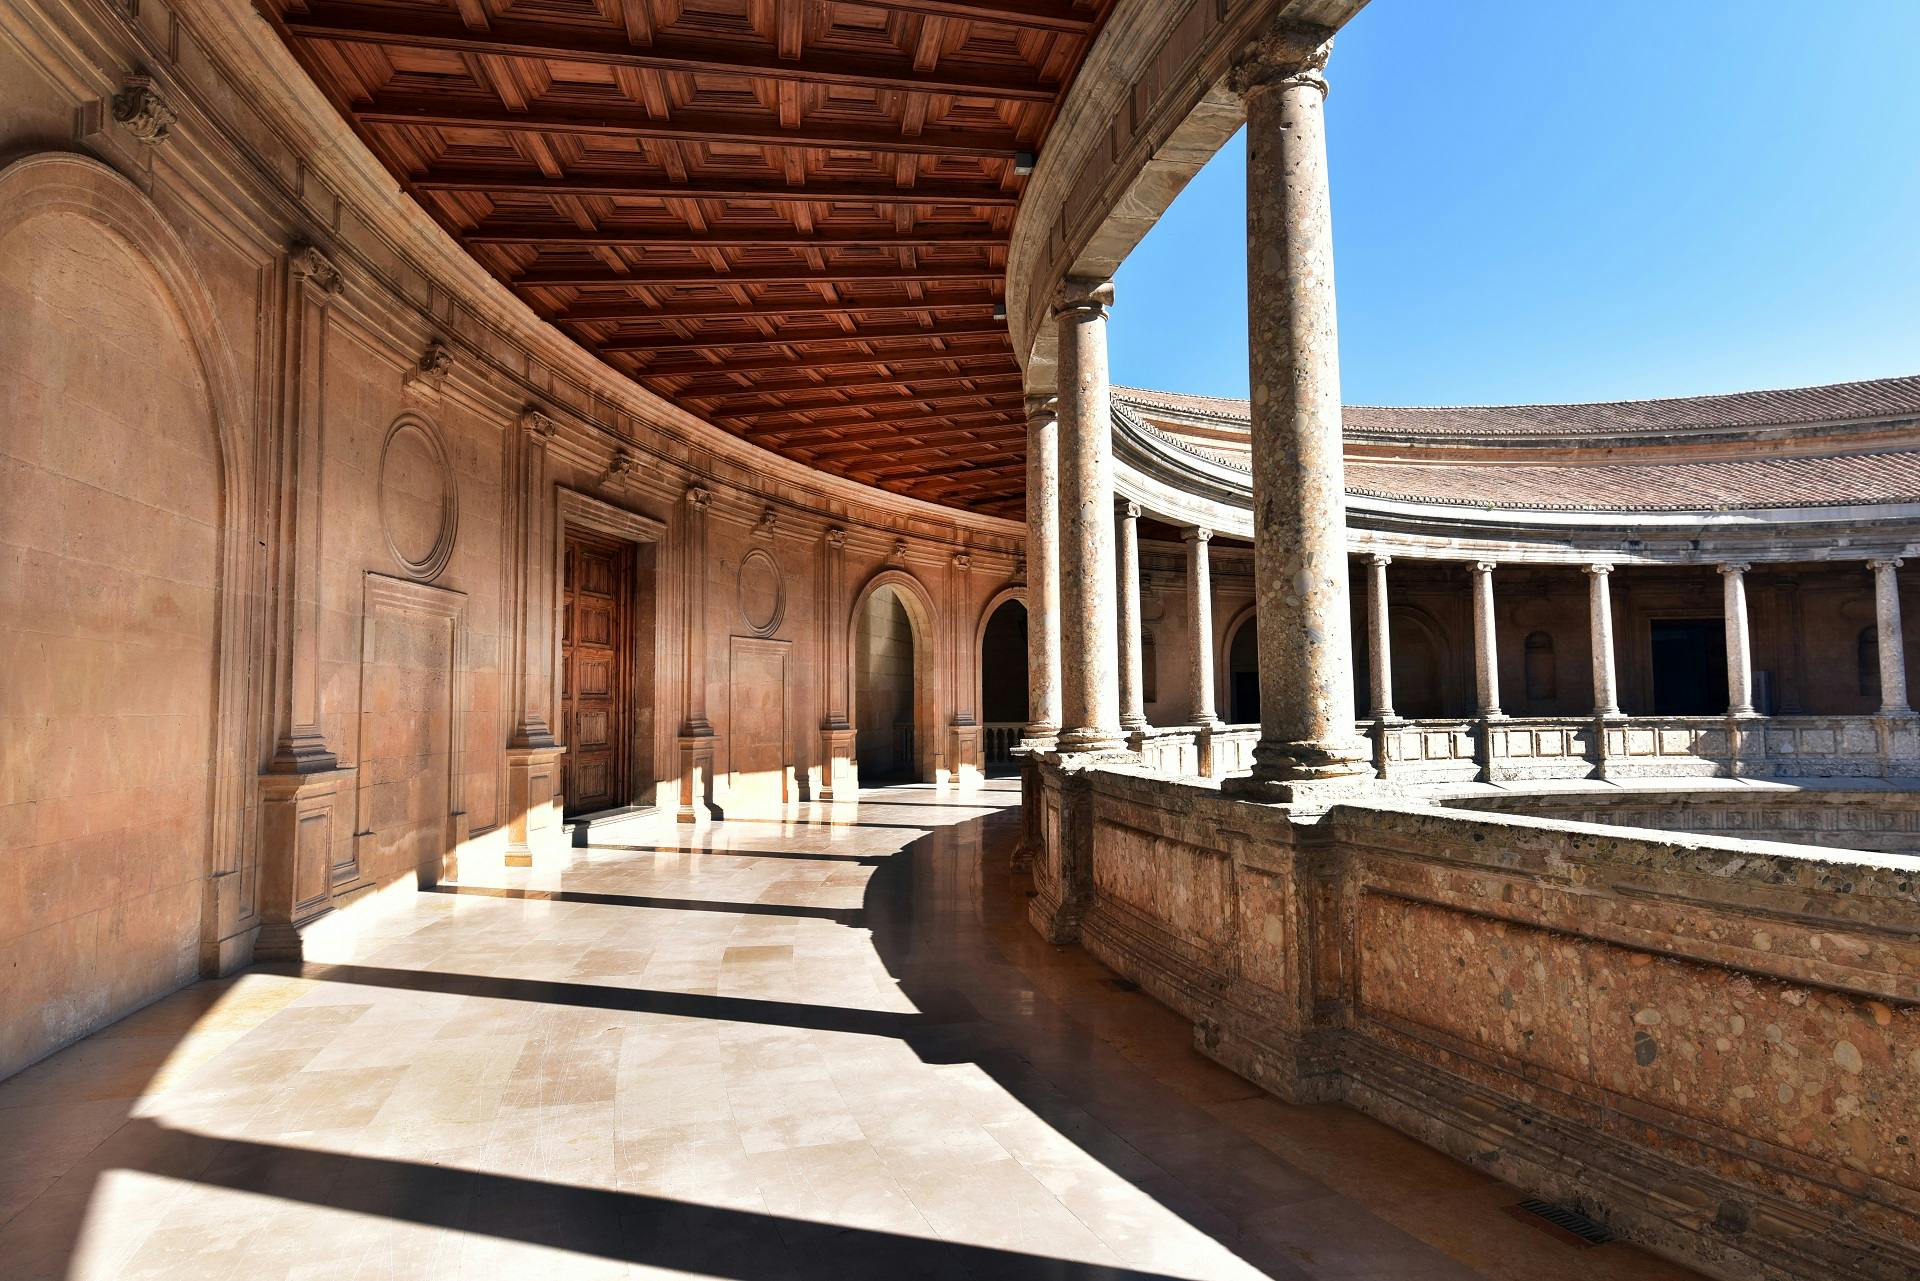 Zwiedzanie z przewodnikiem po Alhambrze w grupach maksymalnie 10-osobowych